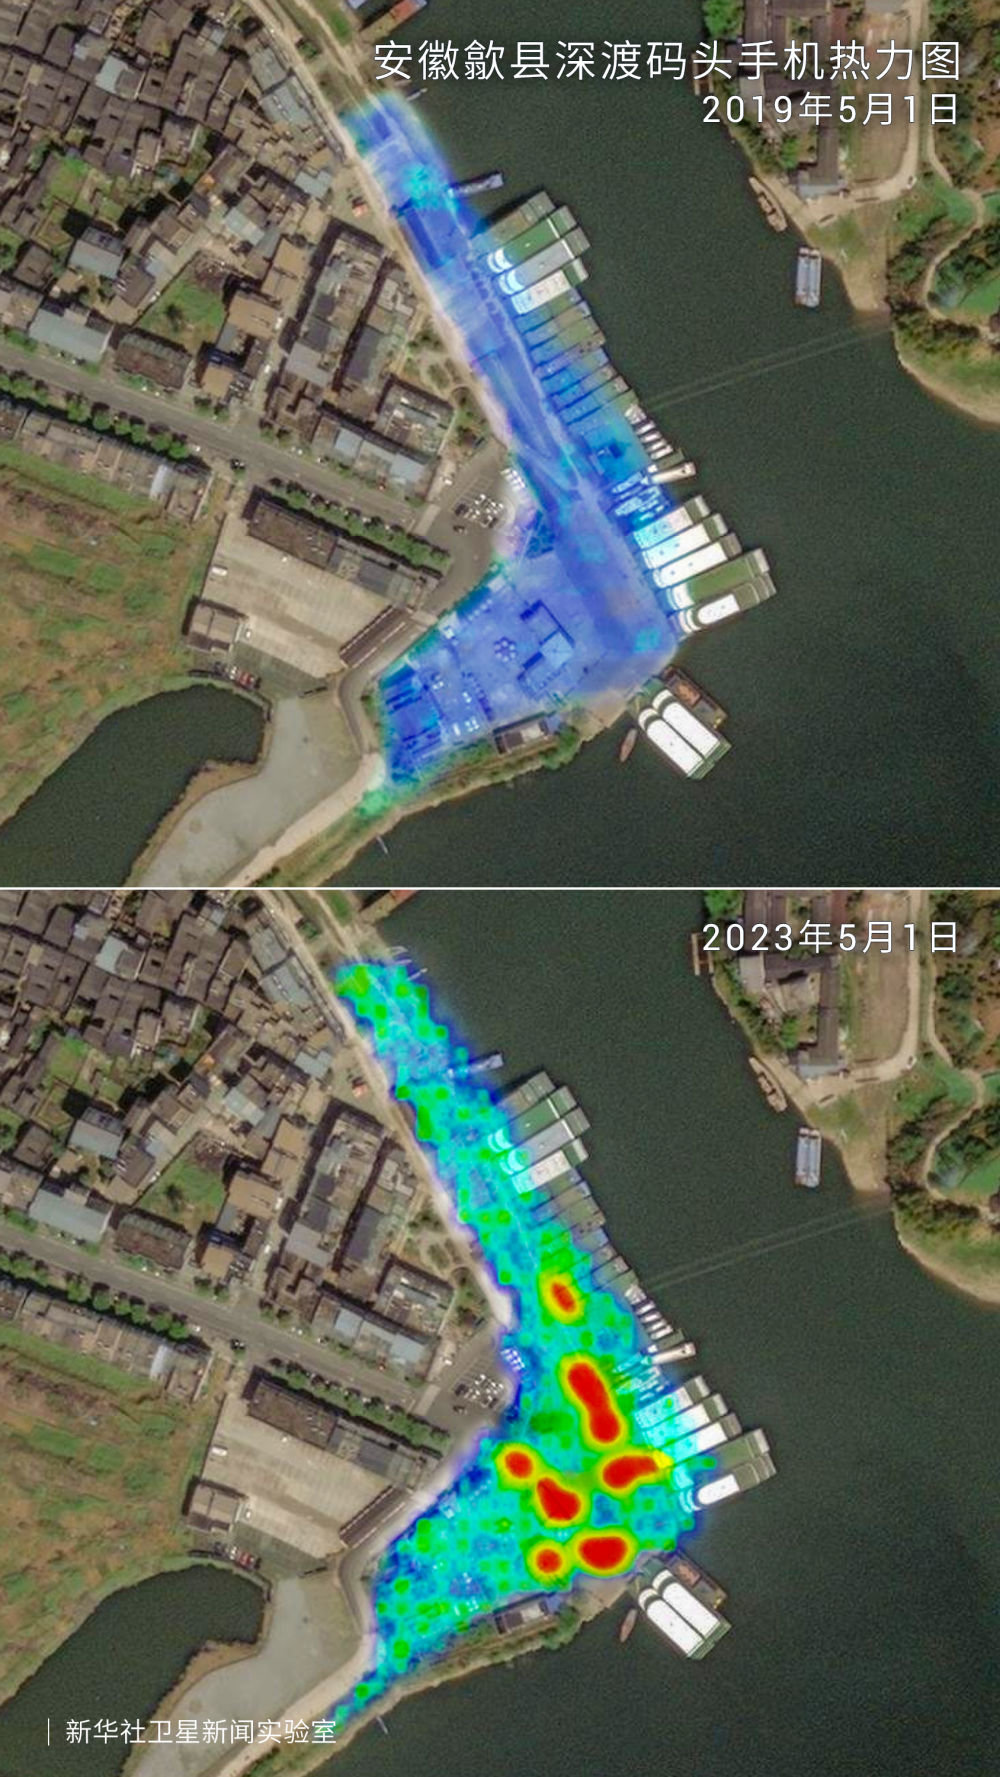 图为新安江畔的歙县深渡码头2019年5月1日与2023年5月1日的手机热力对比。手机信号密度越大，颜色越深。更大范围、更密集的手机信号，反映出大幅增长的人流量。